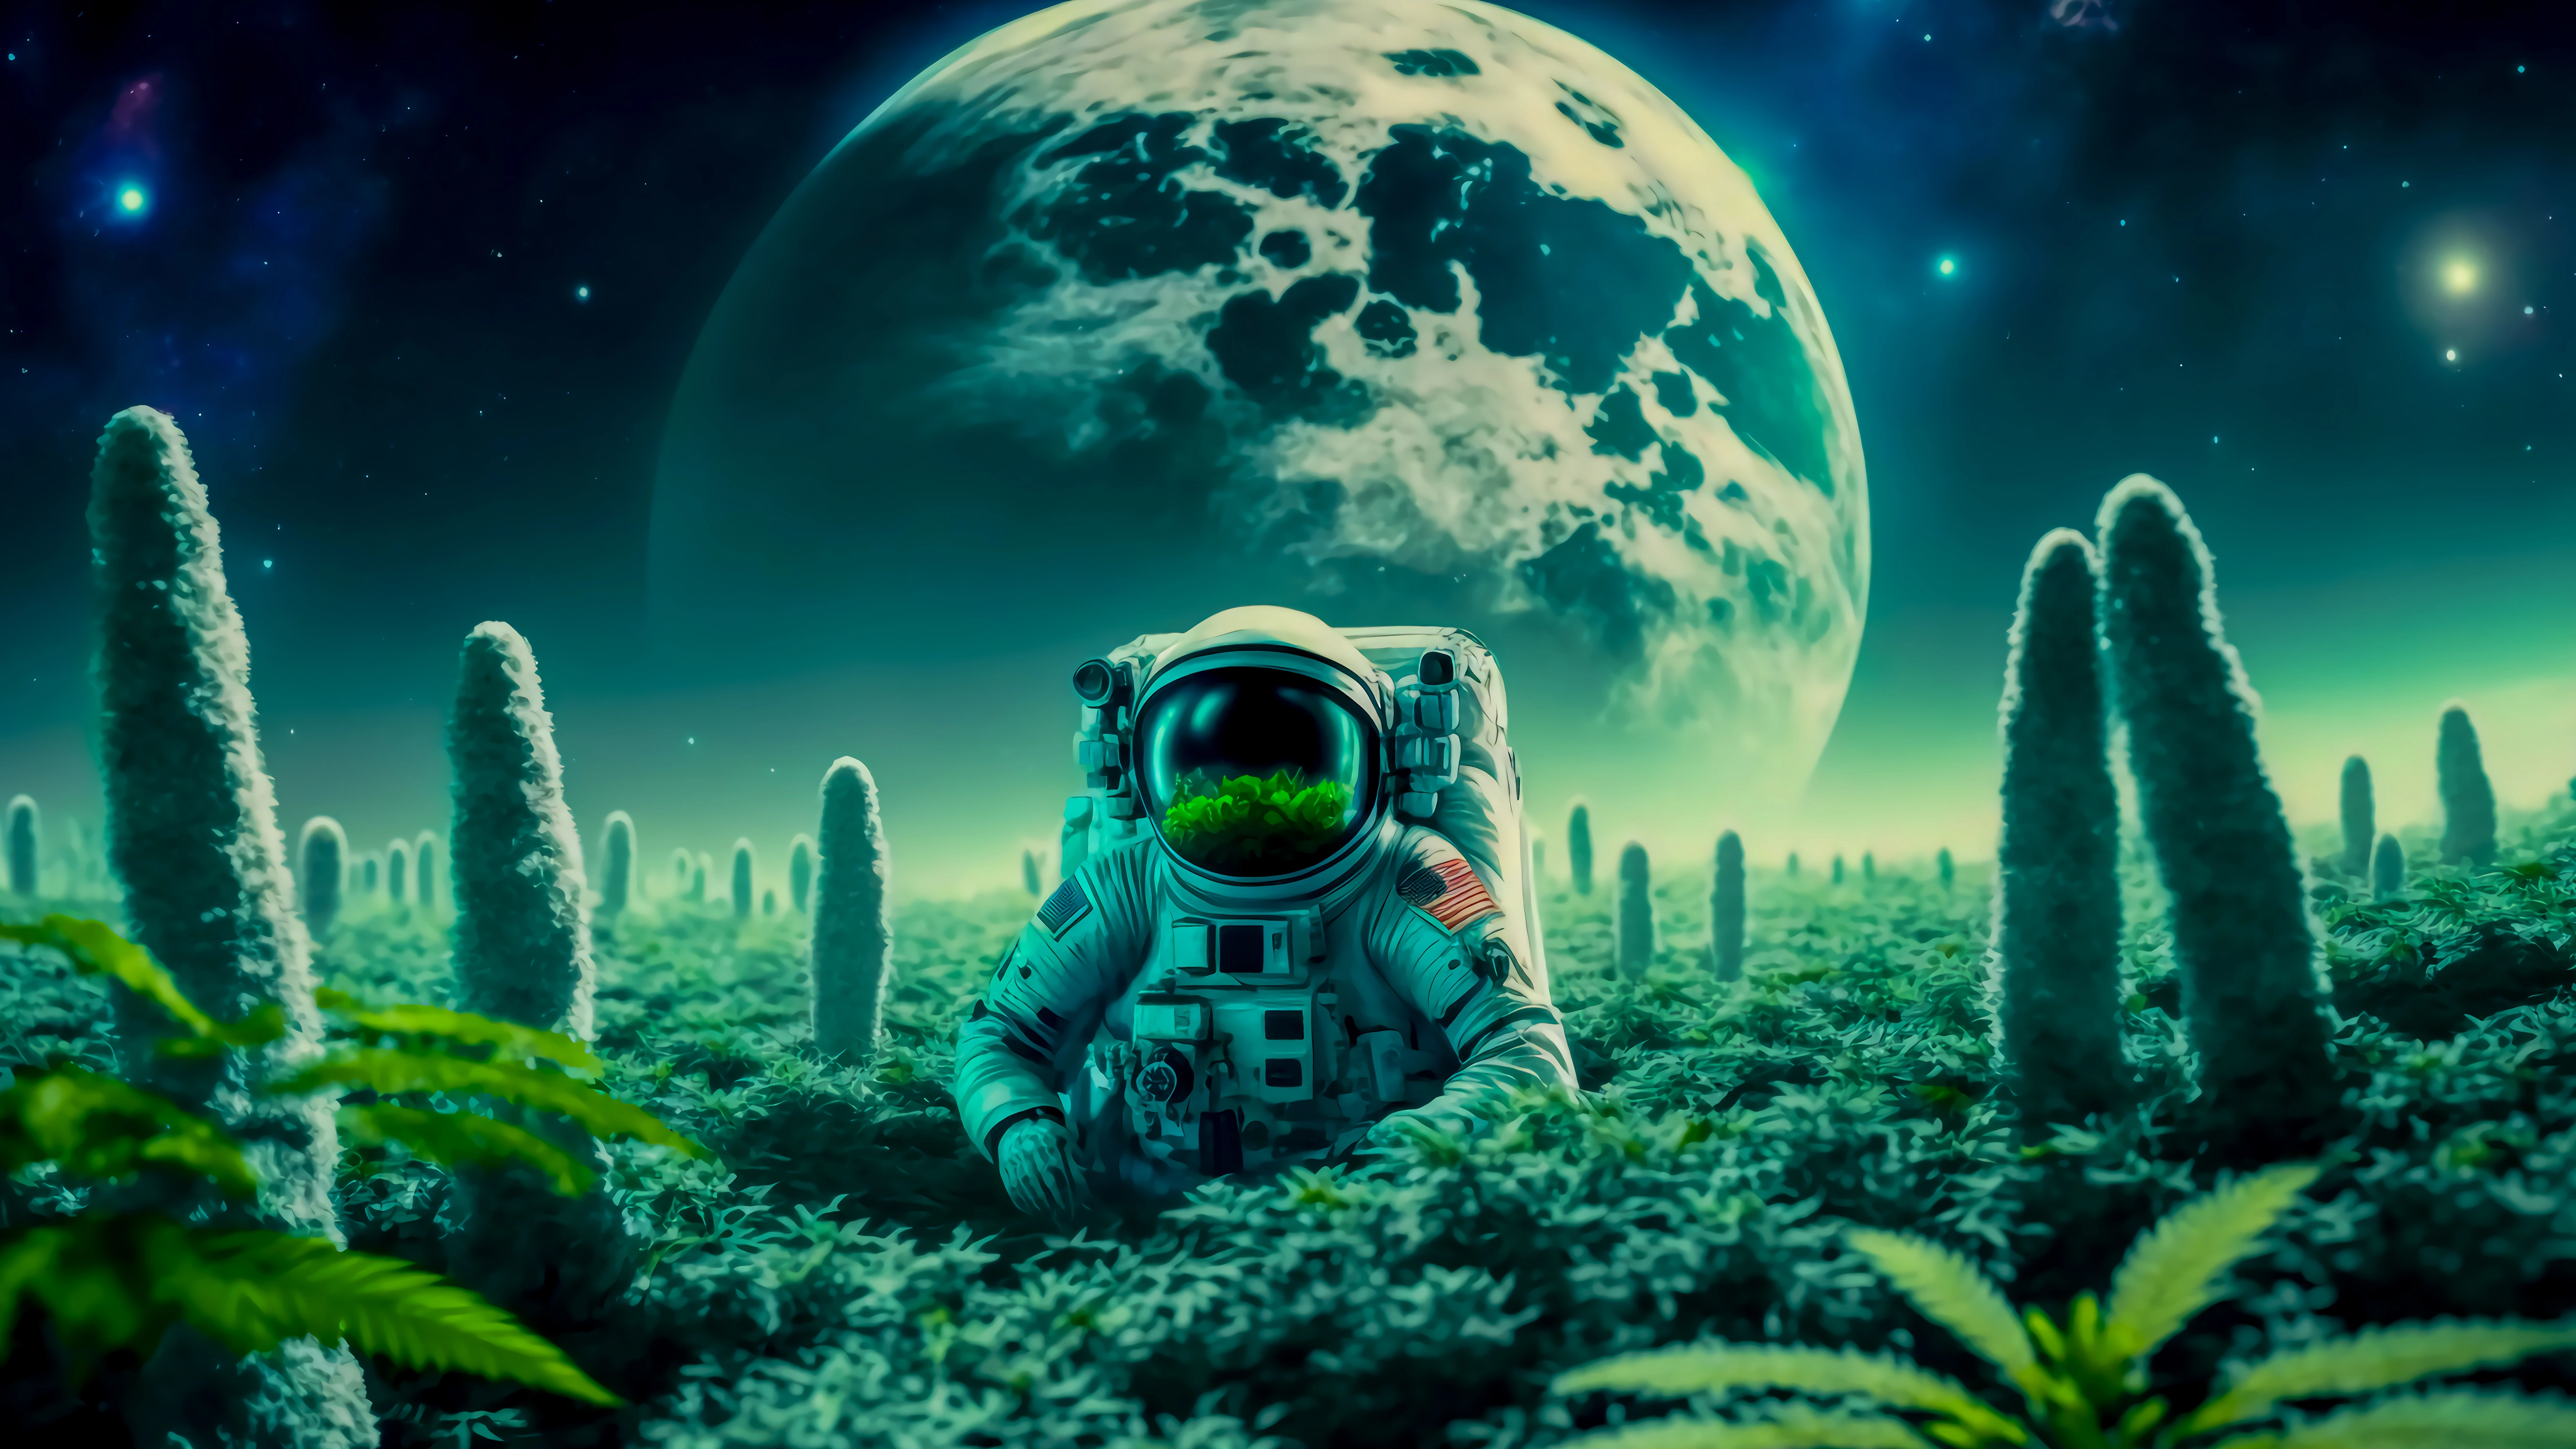 astronaut in dreamy land om.jpg